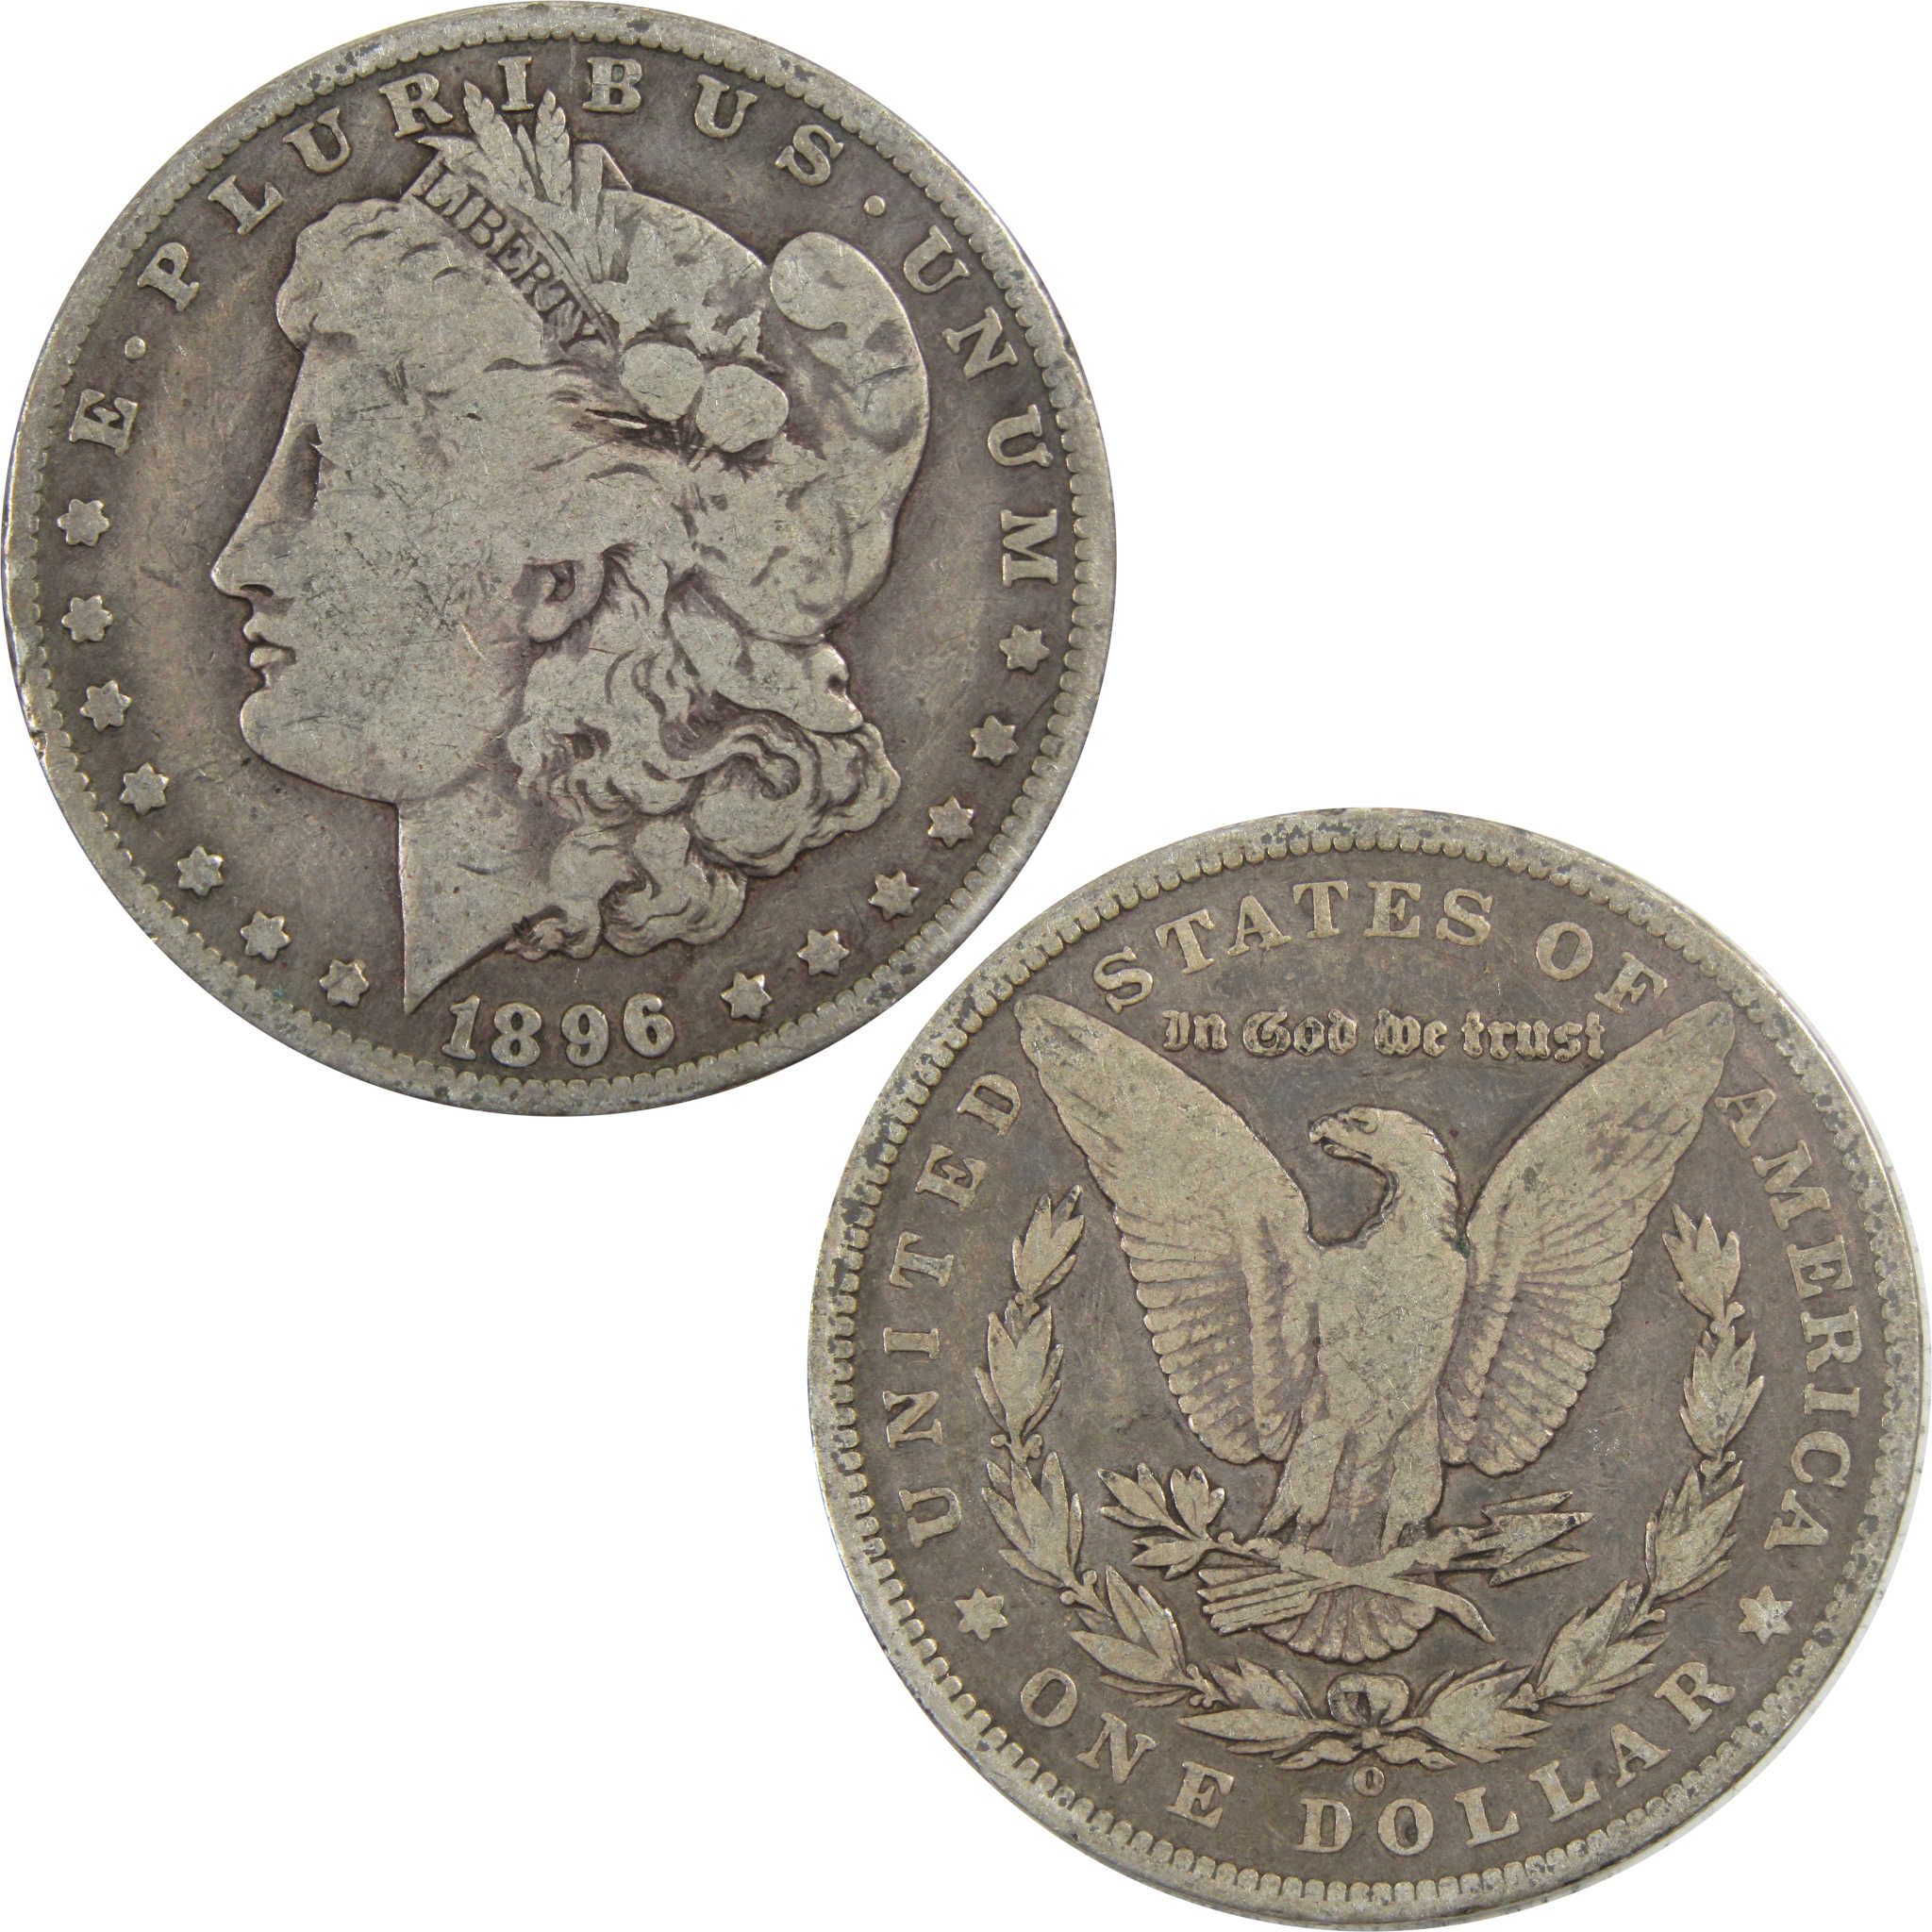 1896 O Morgan Dollar VG Very Good 90% Silver $1 Coin SKU:I5573 - Morgan coin - Morgan silver dollar - Morgan silver dollar for sale - Profile Coins &amp; Collectibles